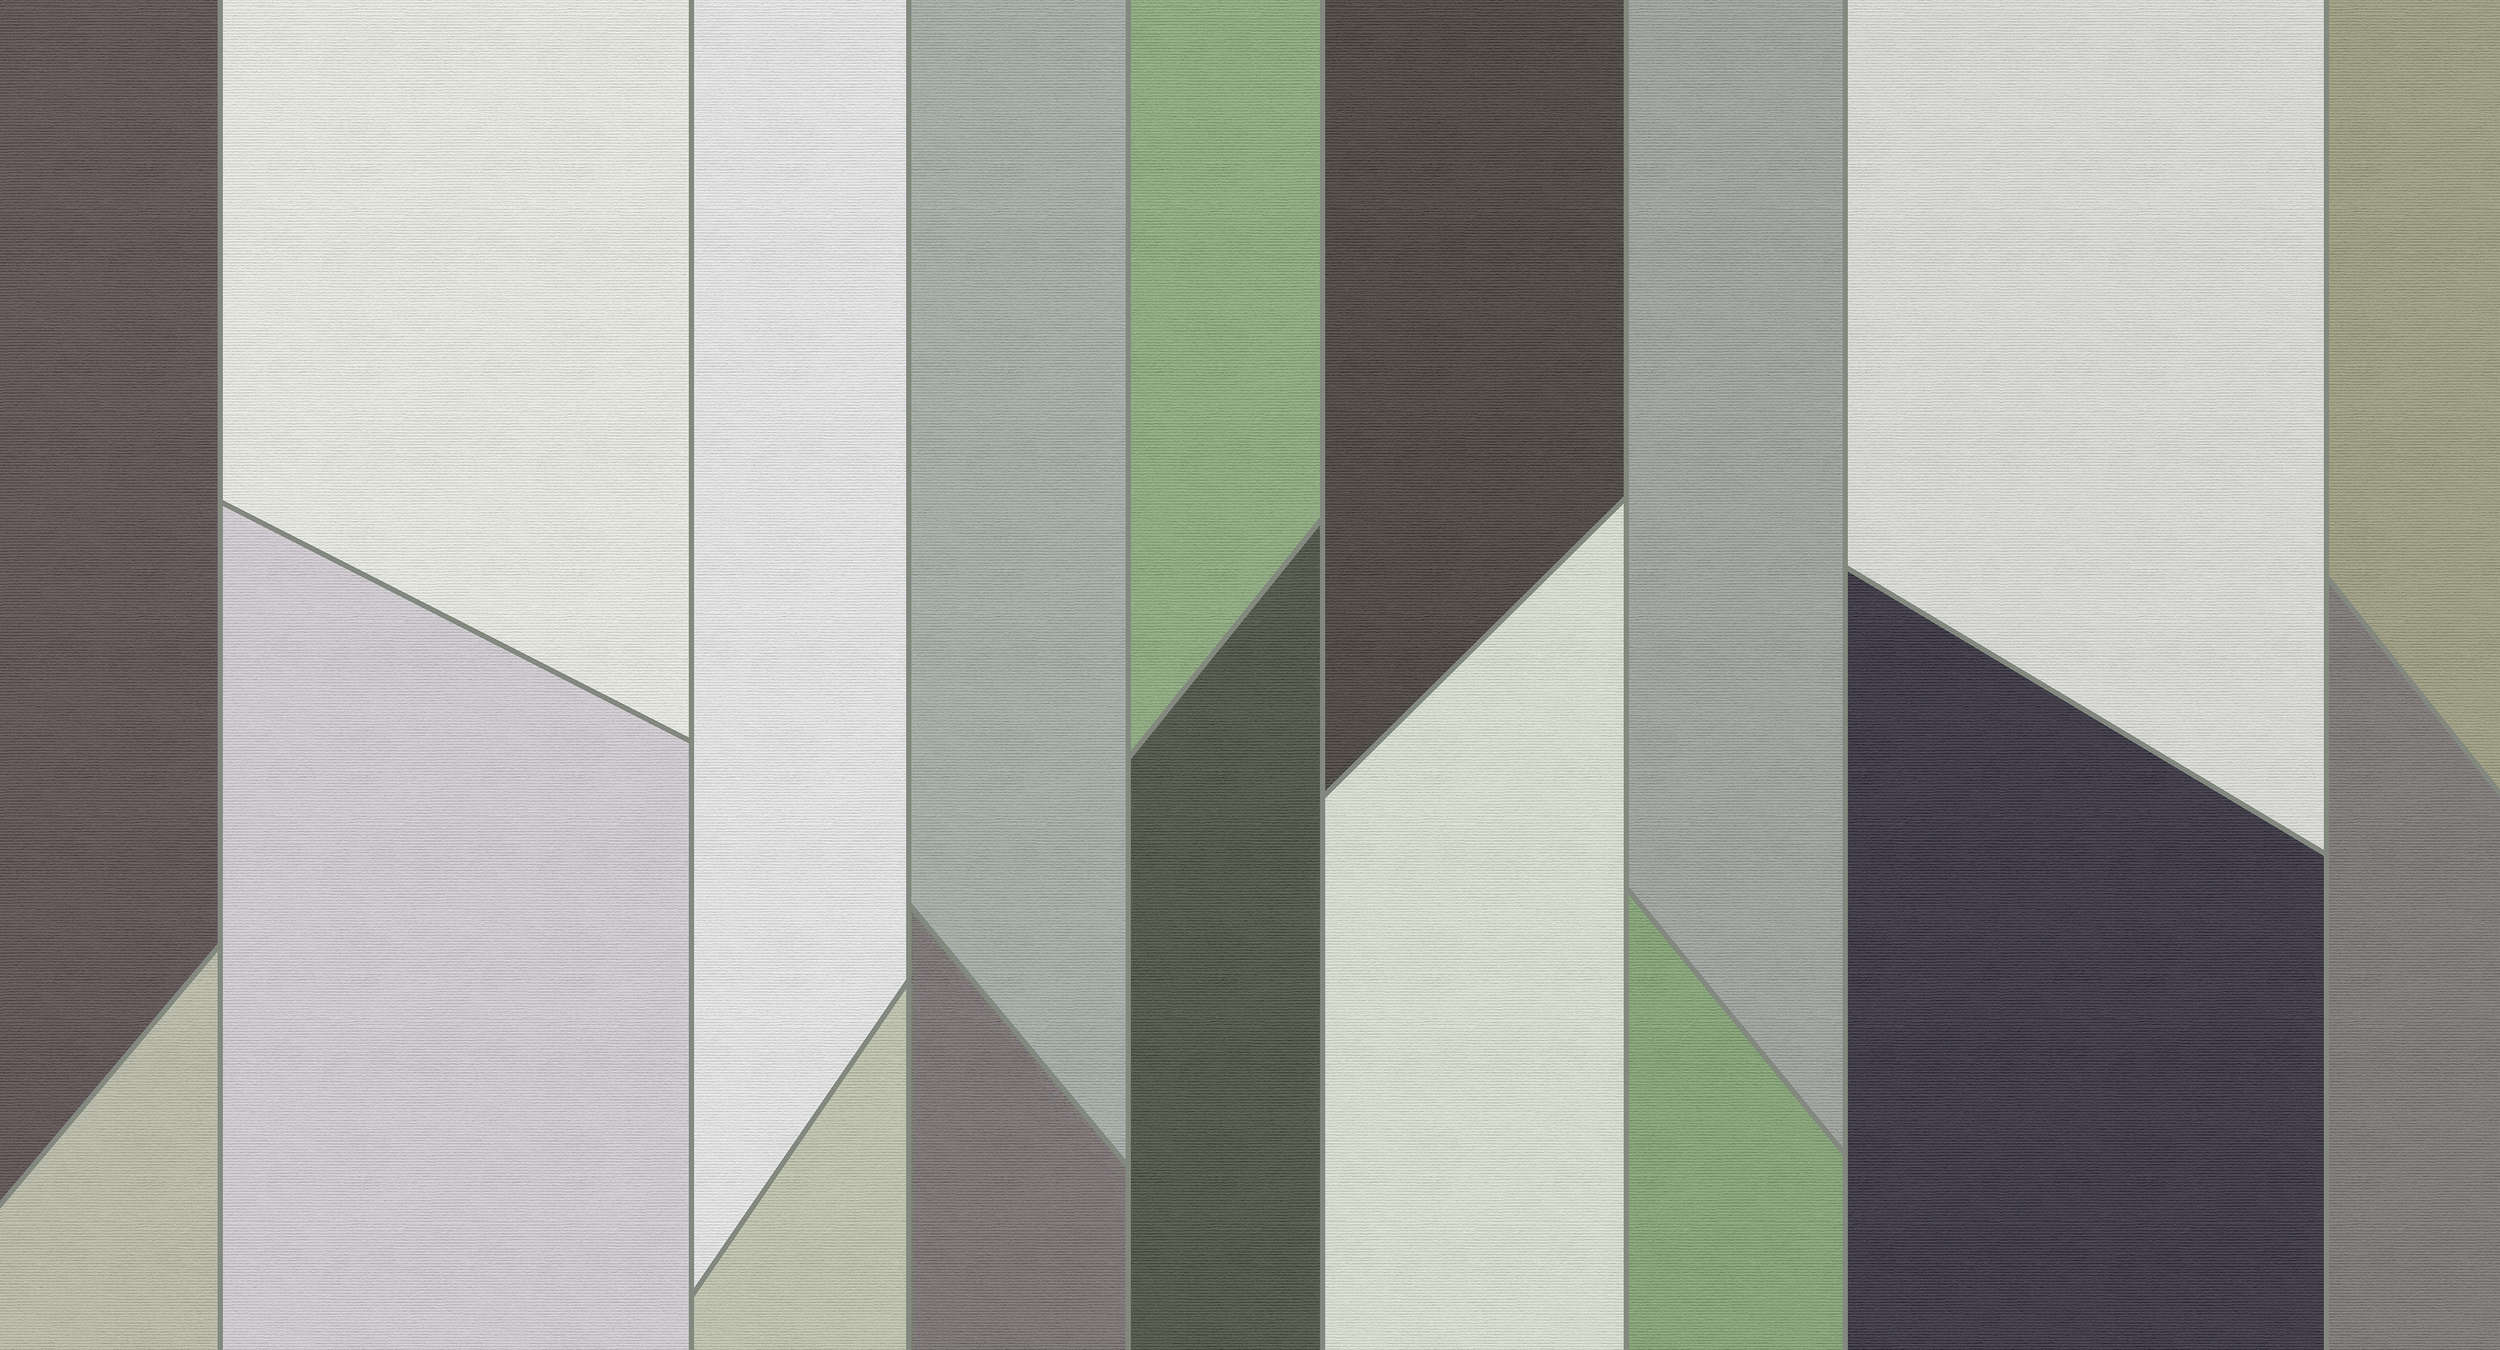             Geometry 3 - Gestreept behang in ribbelstructuur met kleurrijk retrodessin - Groen, Violet | Strukturenvlies
        